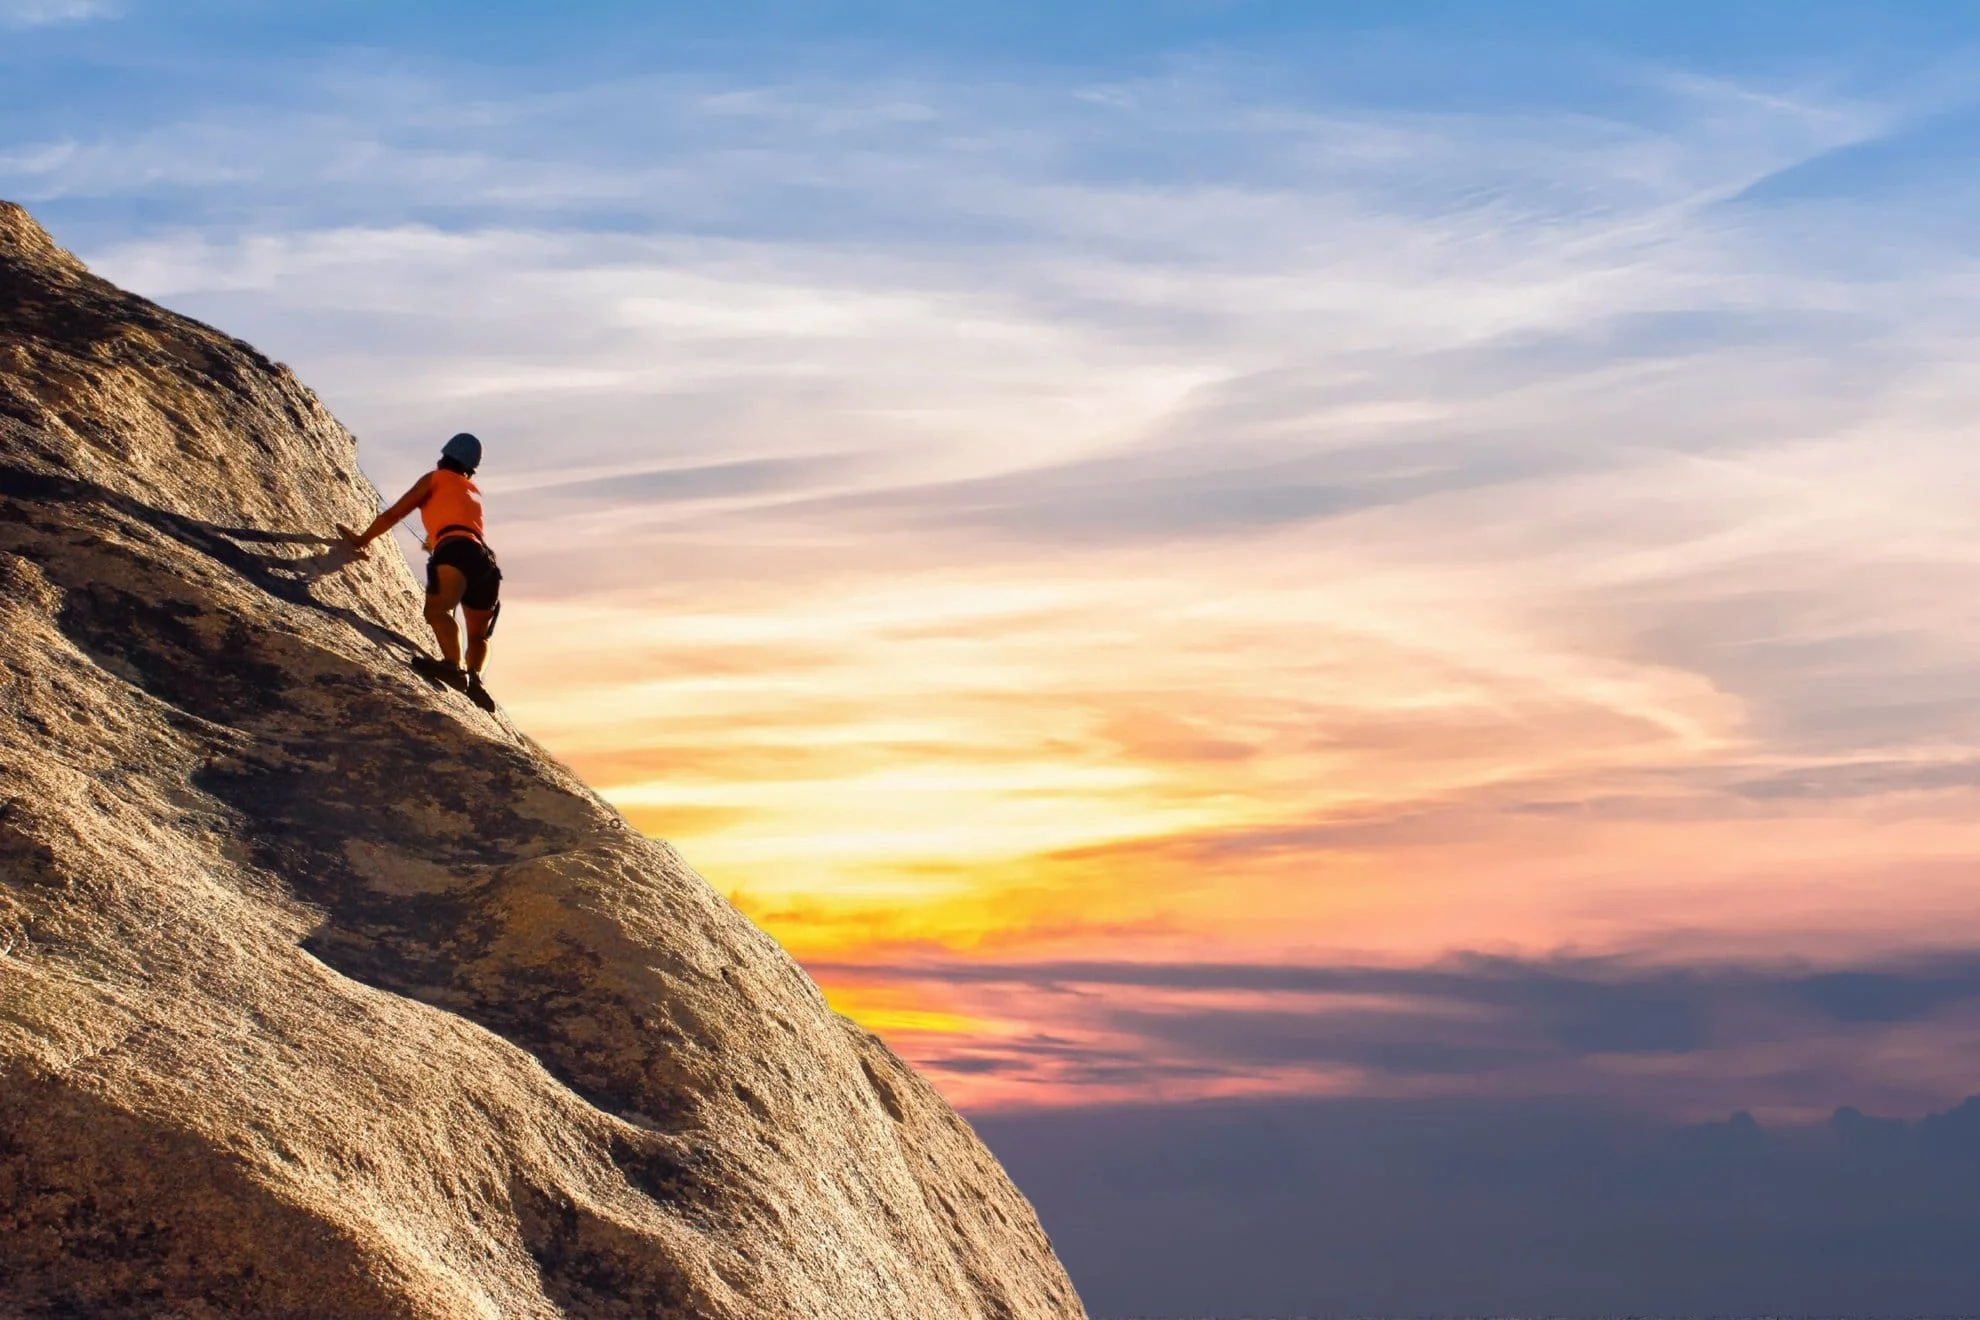 Ein mutiger Kletterer erklimmt eine steile Felswand, sein Blick fest auf den Gipfel gerichtet, während der Himmel im Hintergrund in atemberaubenden Orange- und Blautönen leuchtet. Diese Szene verkörpert die Reise der Selbstfindung, symbolisiert durch den Mut, sich Herausforderungen zu stellen und über persönliche Grenzen hinauszugehen.